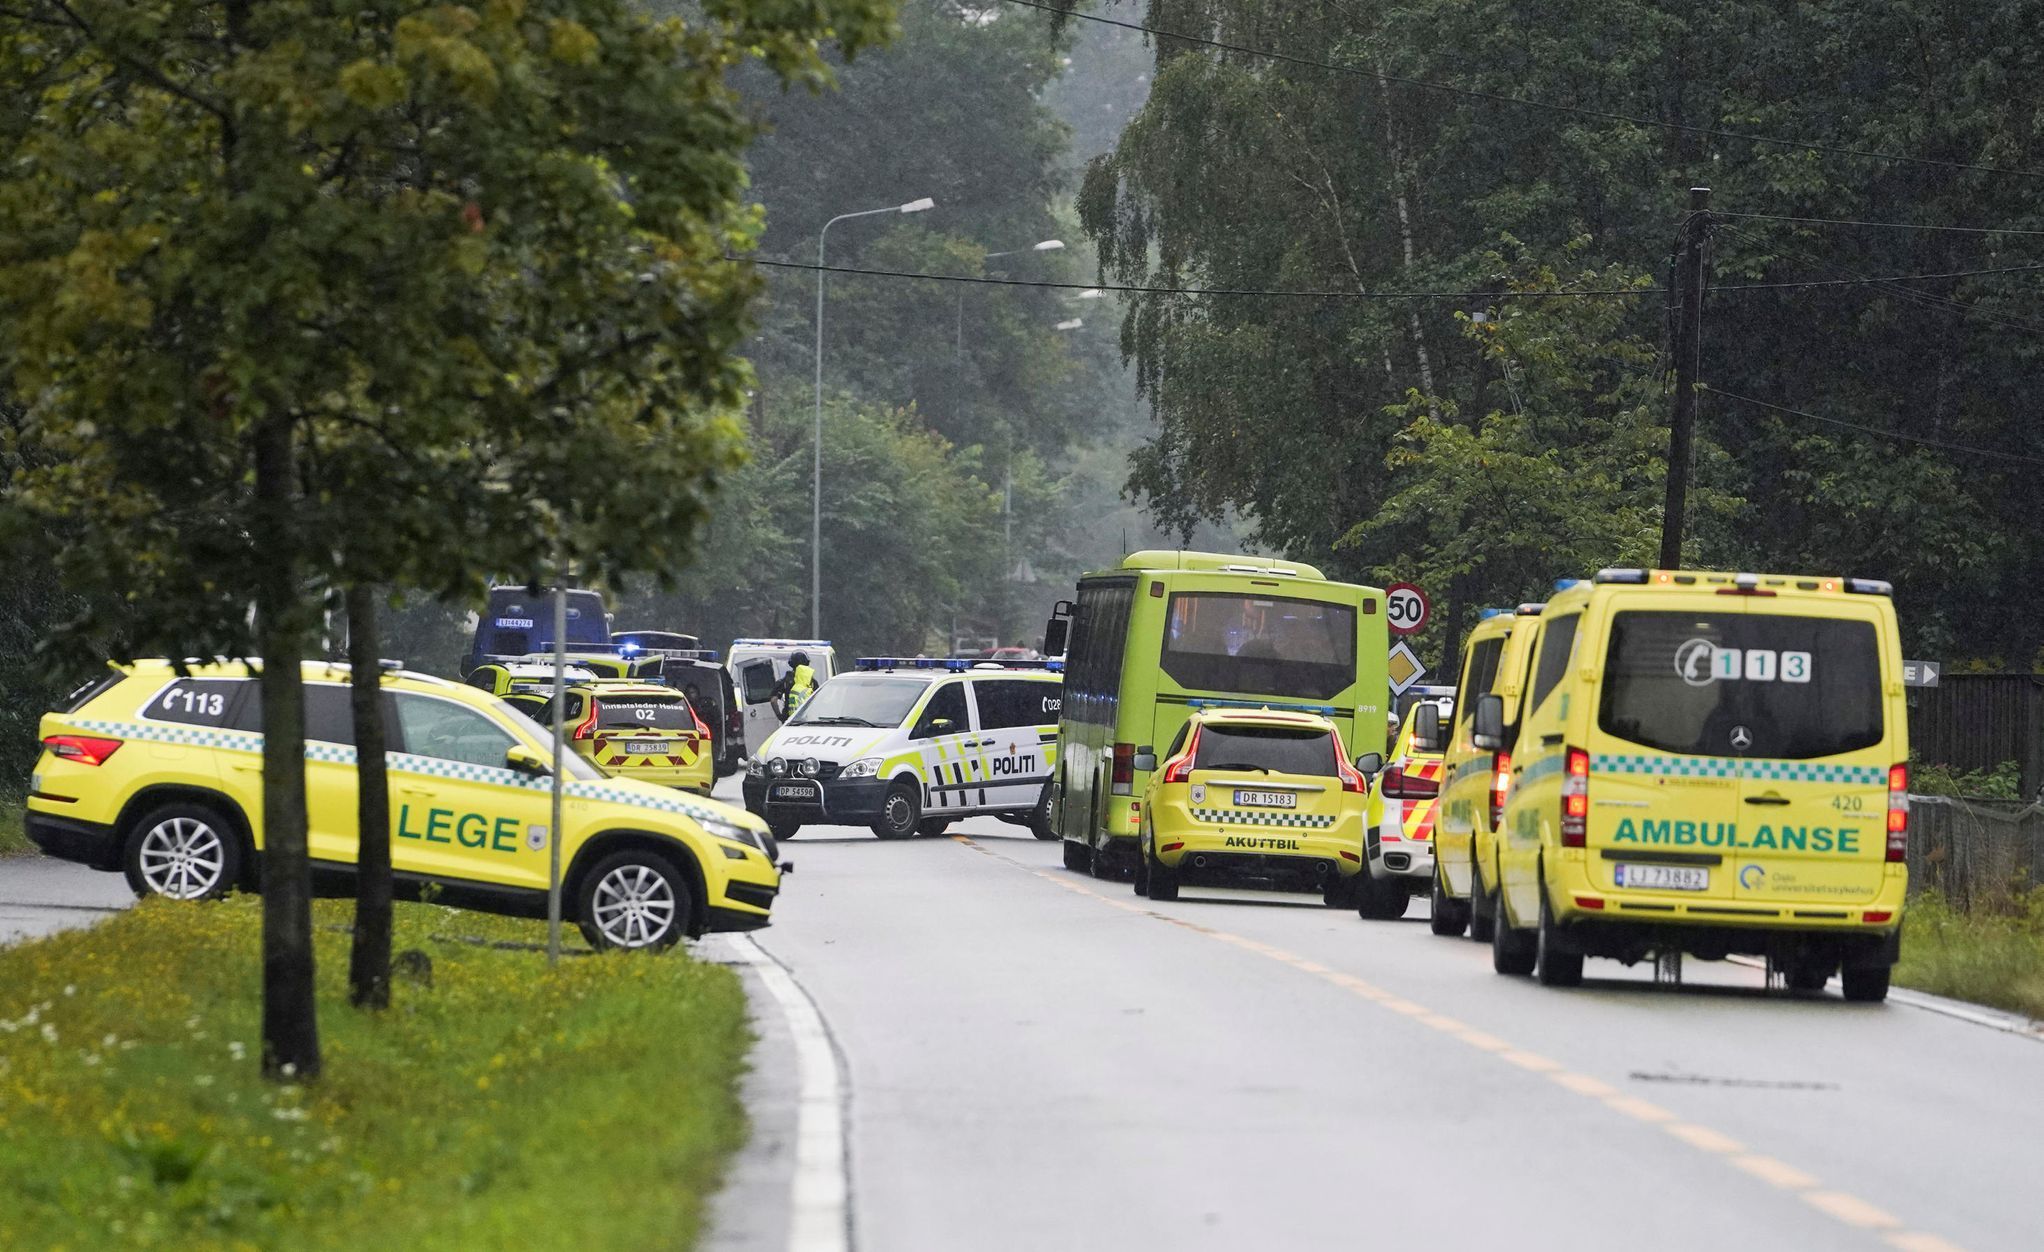 Norsko - zneškodněný útok na mešitu